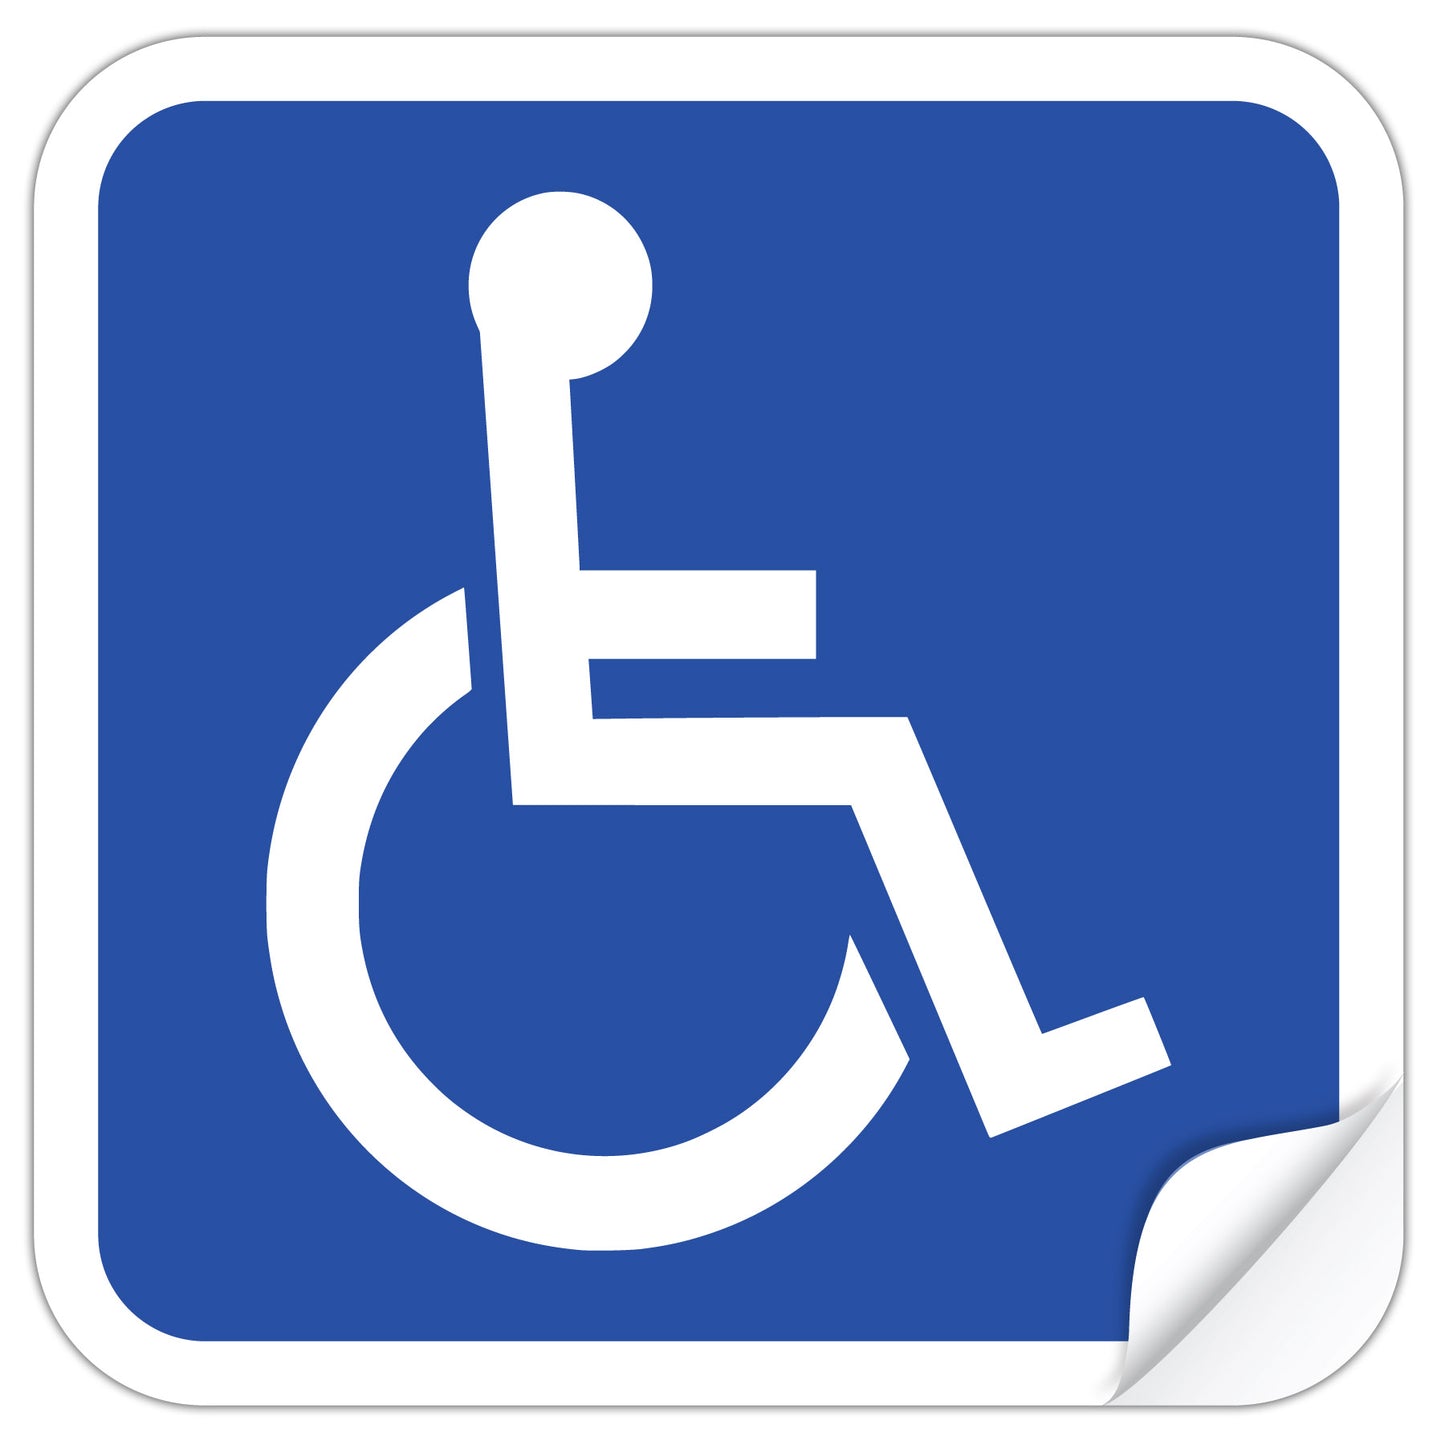 Handicap access sign labels.  Standard handicap ADA symbol.